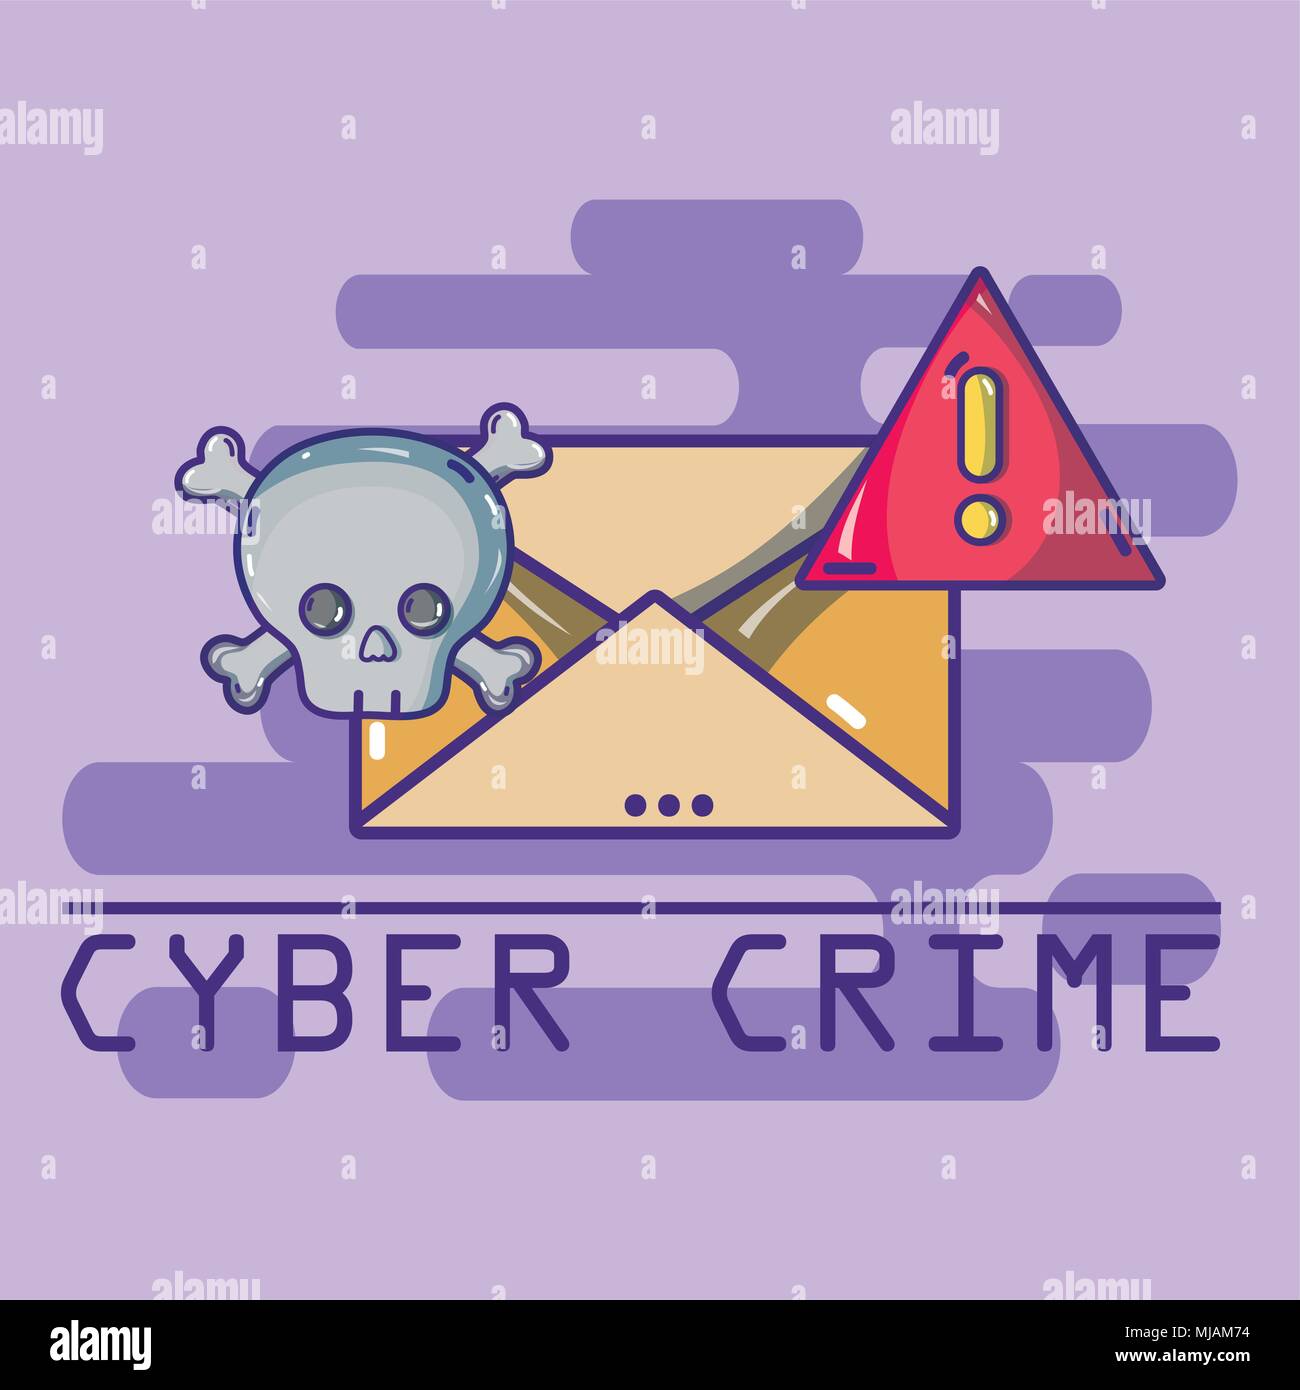 Cyber crime cartoons concept Stock Vector